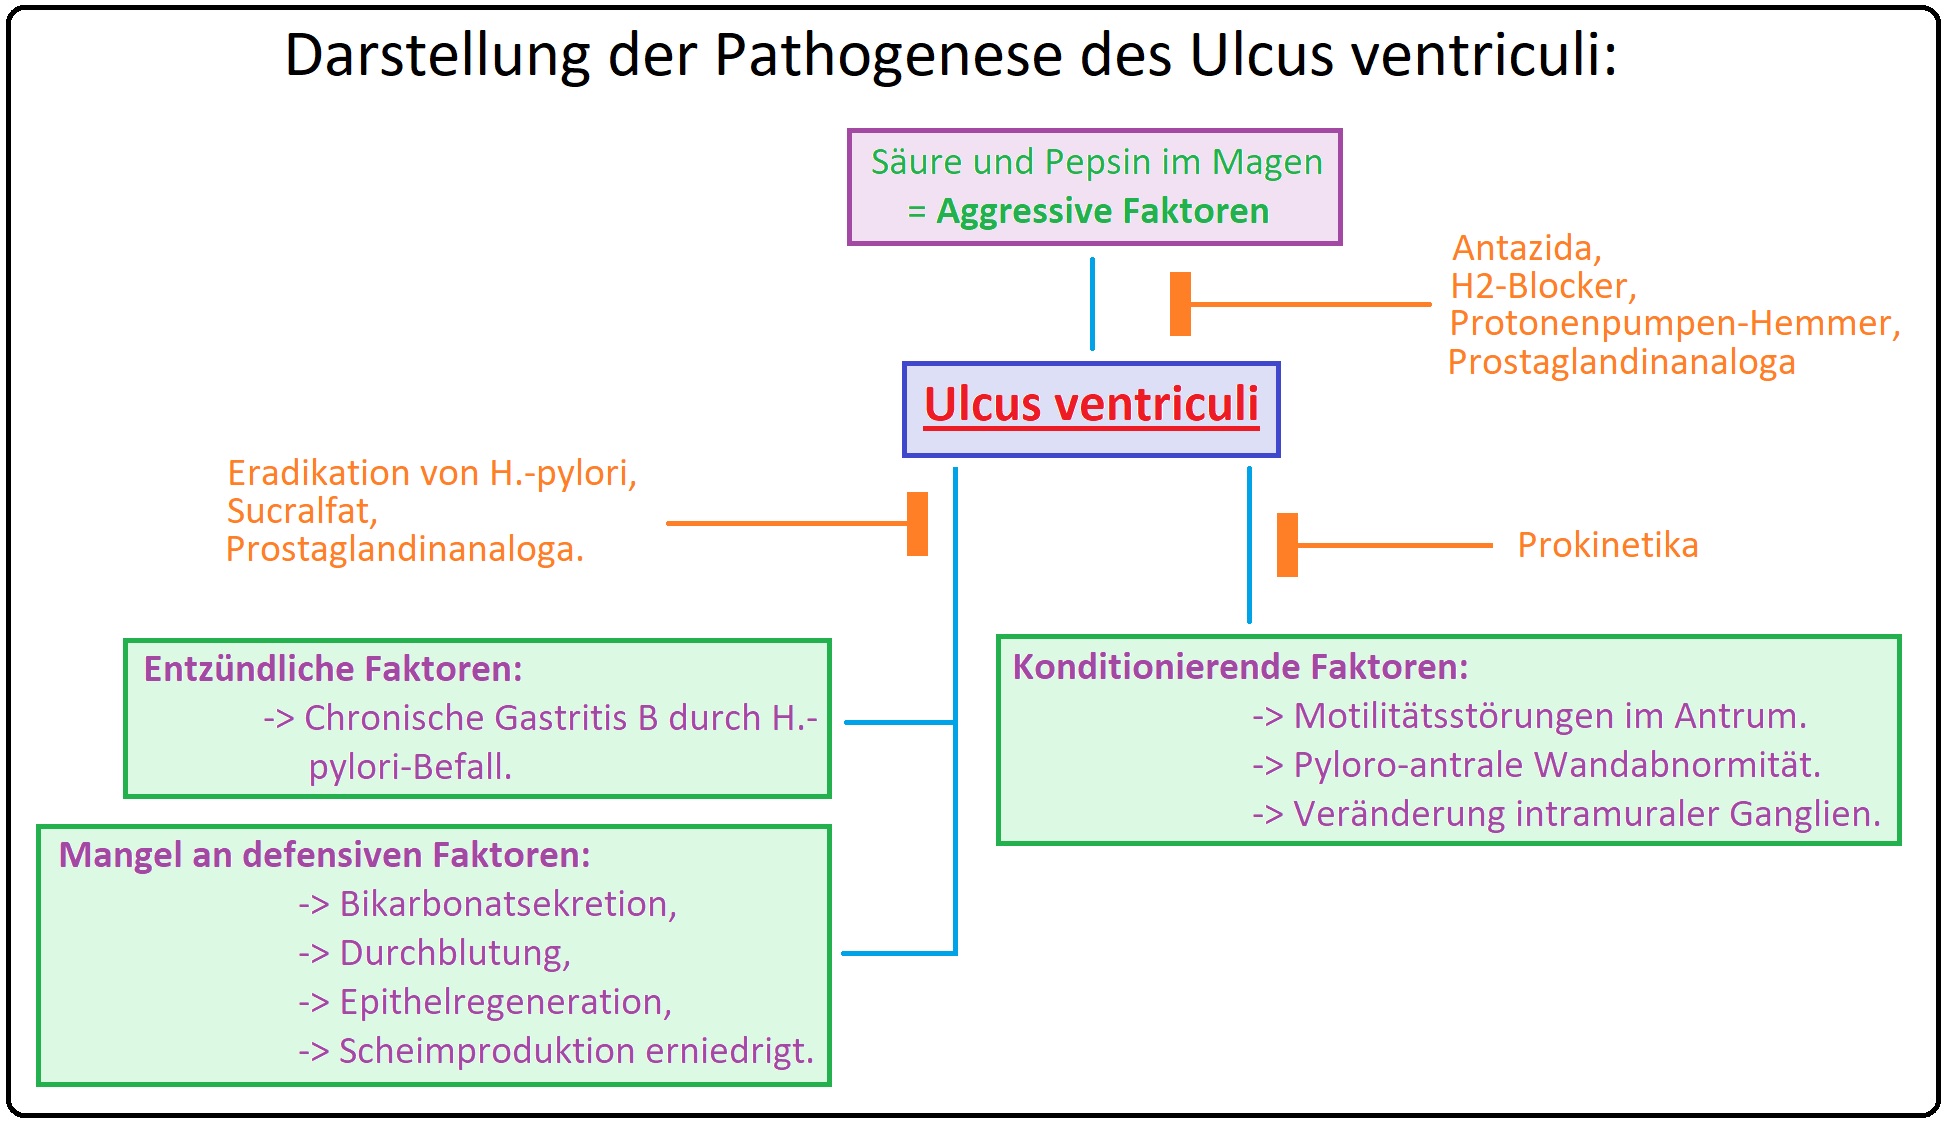 577 Darstellung der Pathogenese des Ulcus ventriculi